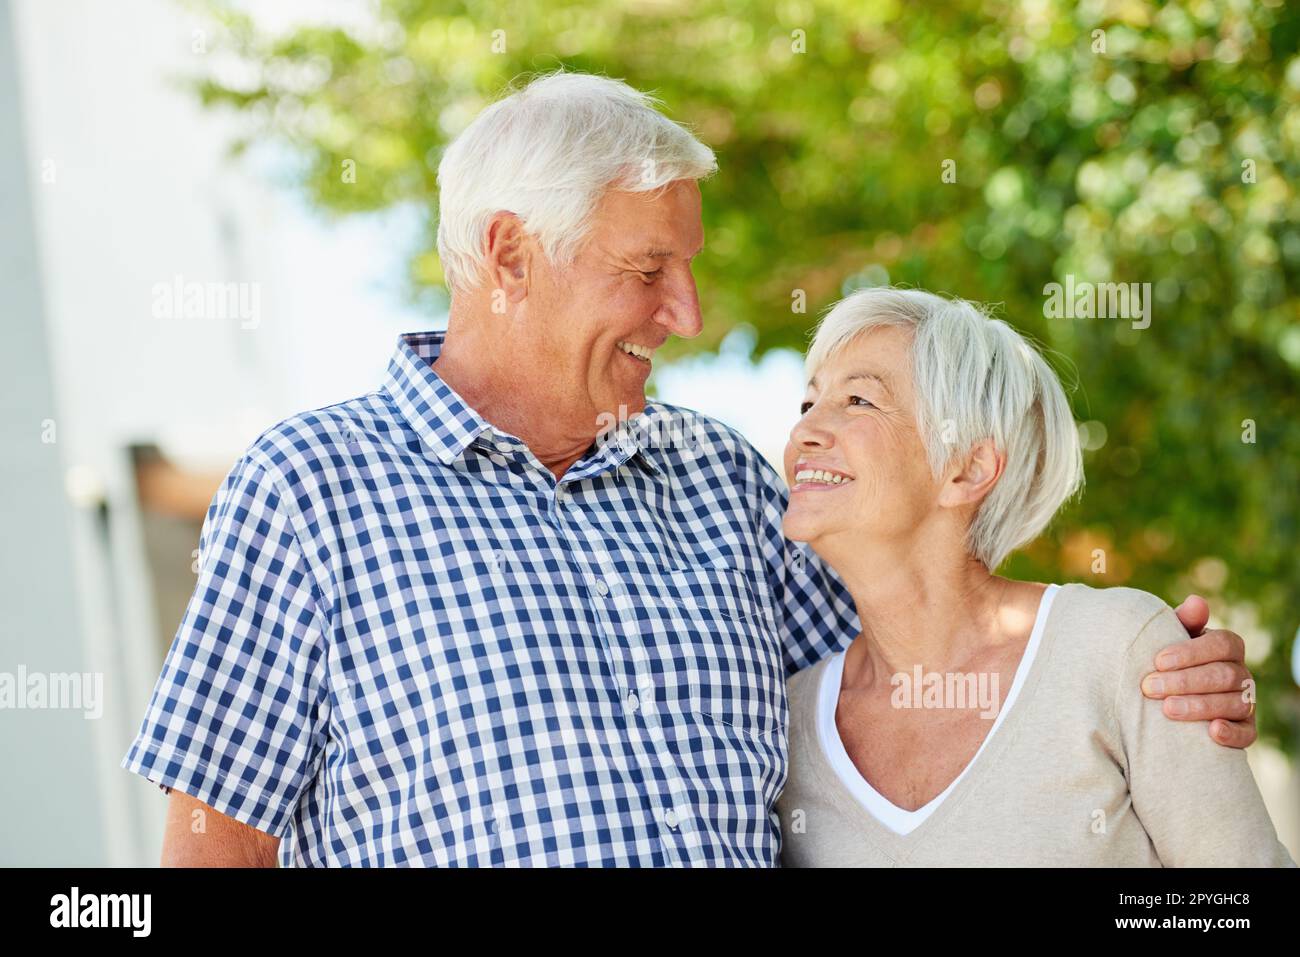 Partenaires pour la vie. un couple senior aimant debout ensemble à l'extérieur. Banque D'Images